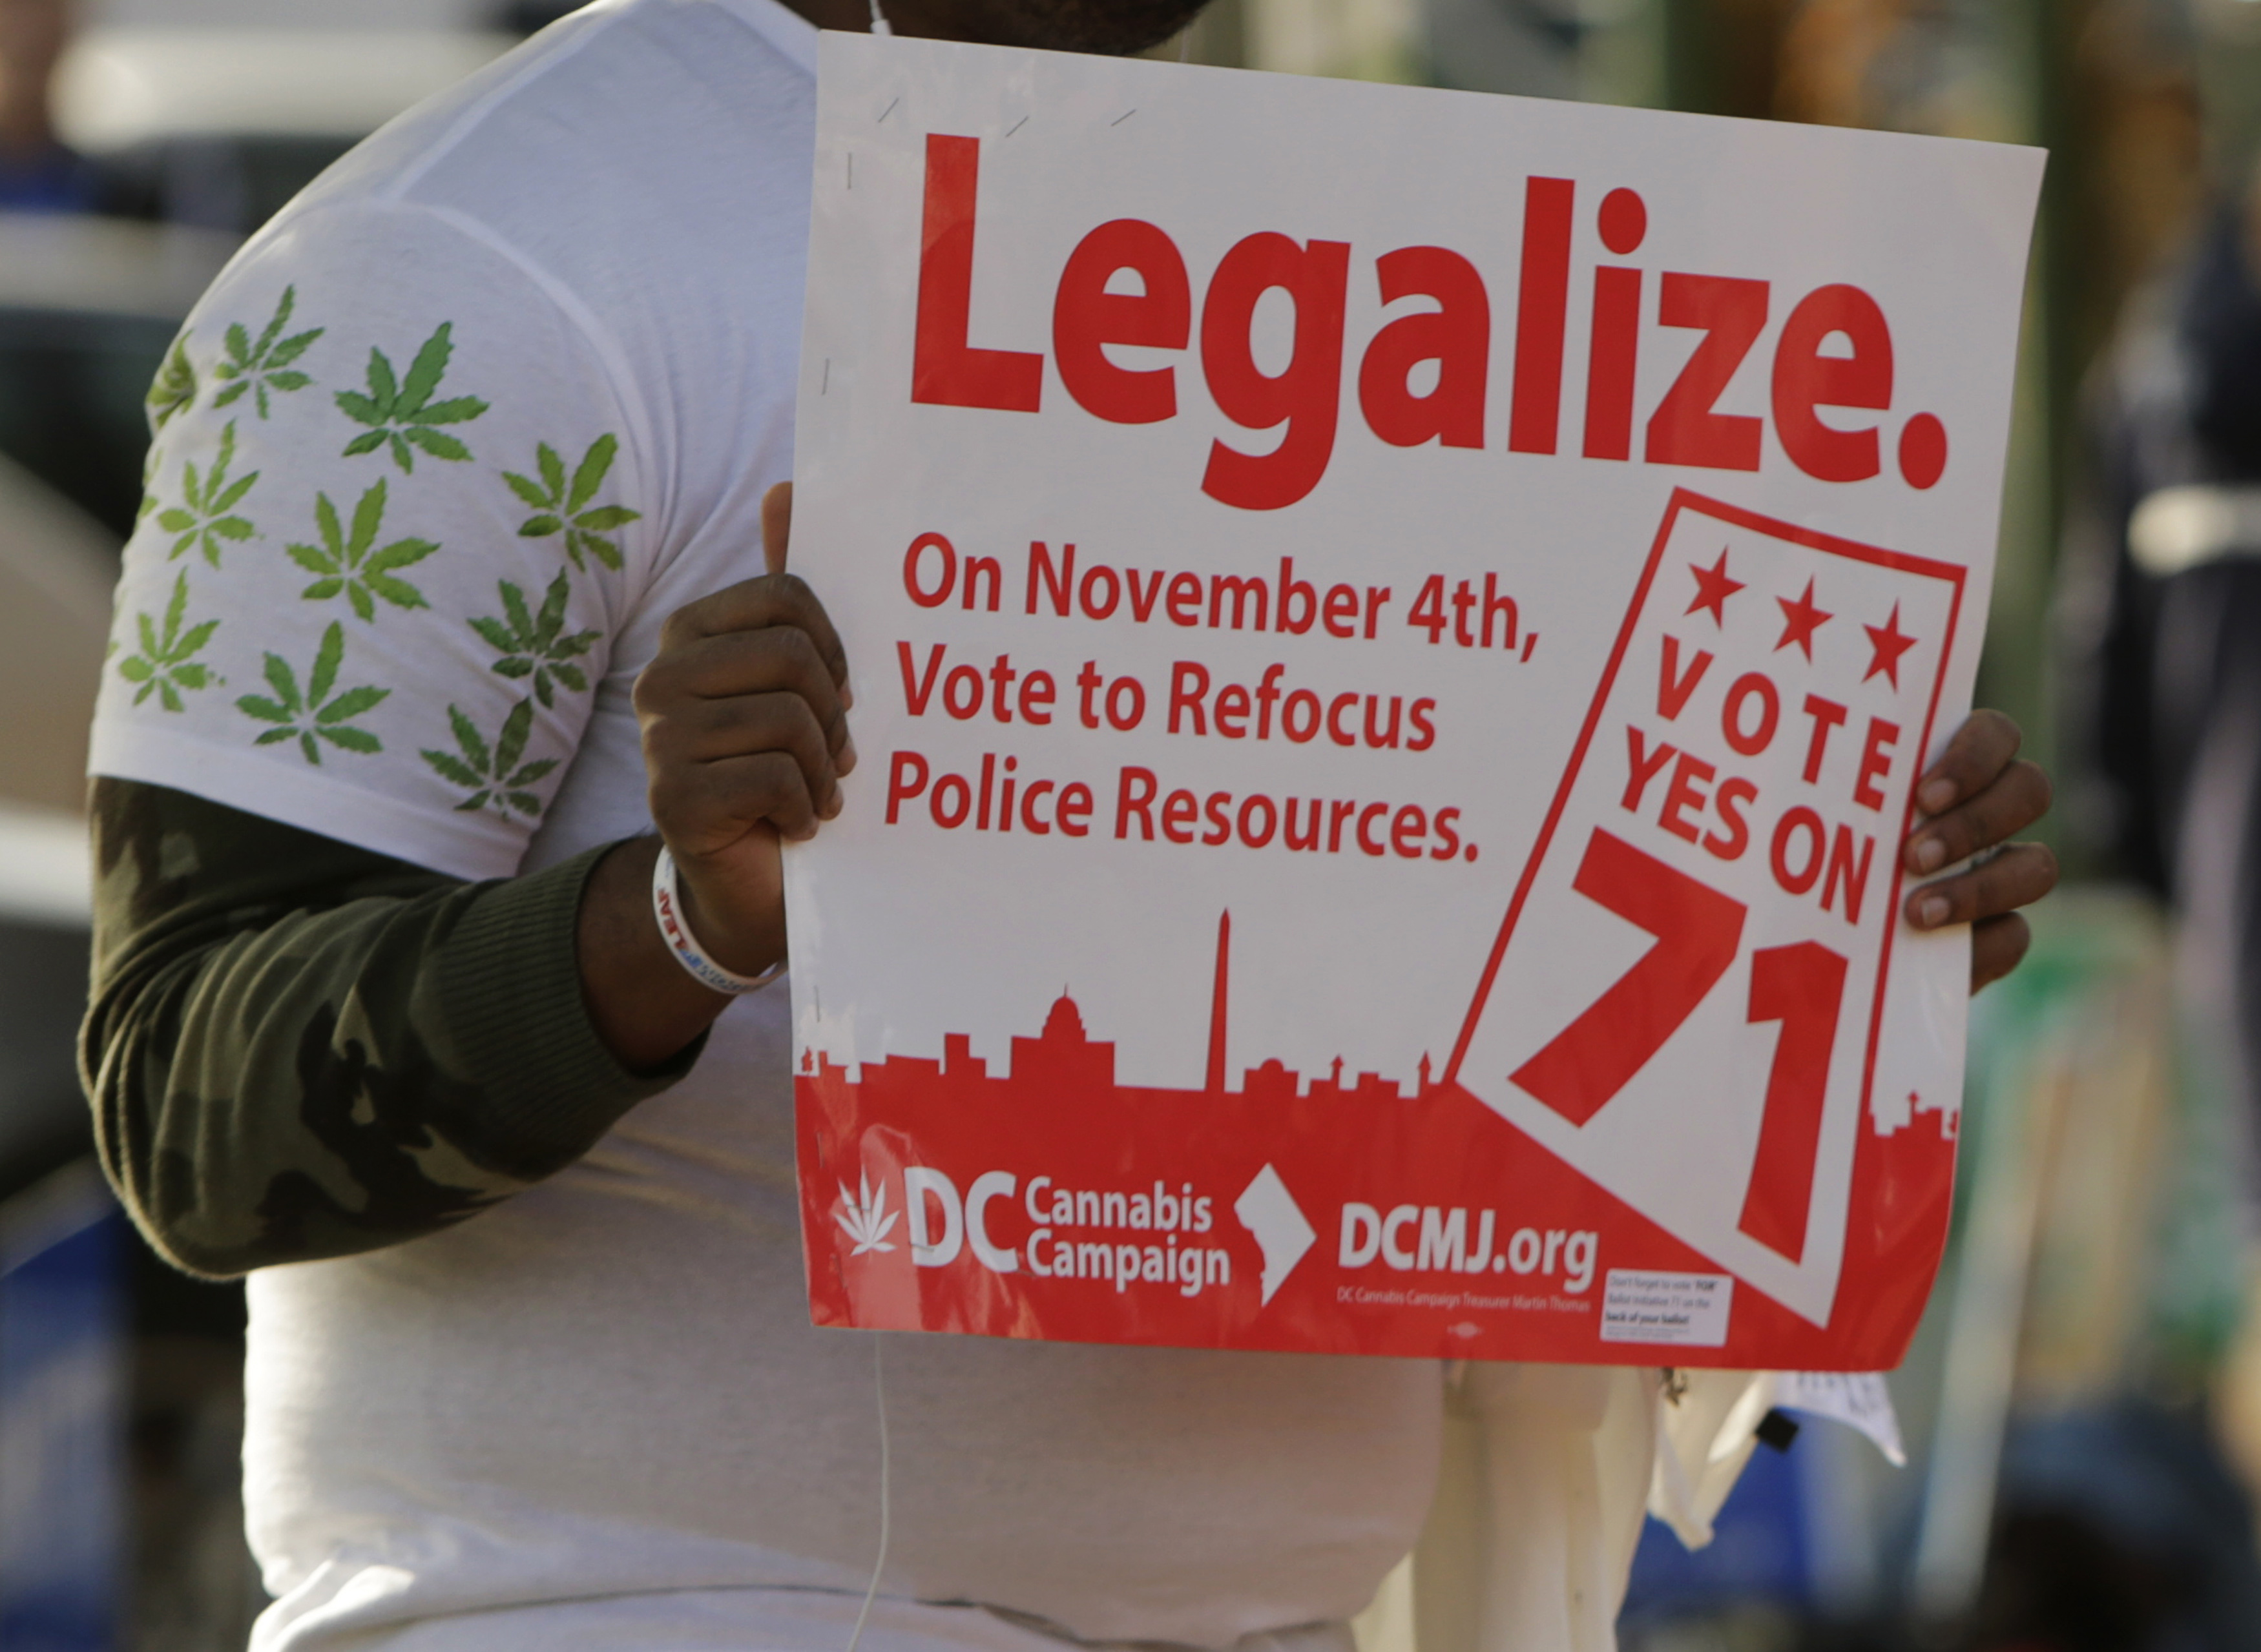 En vote. Травка разрешена в США. Что такое Лигалайз на сленге. Карта легализации марихуаны. Legalize.